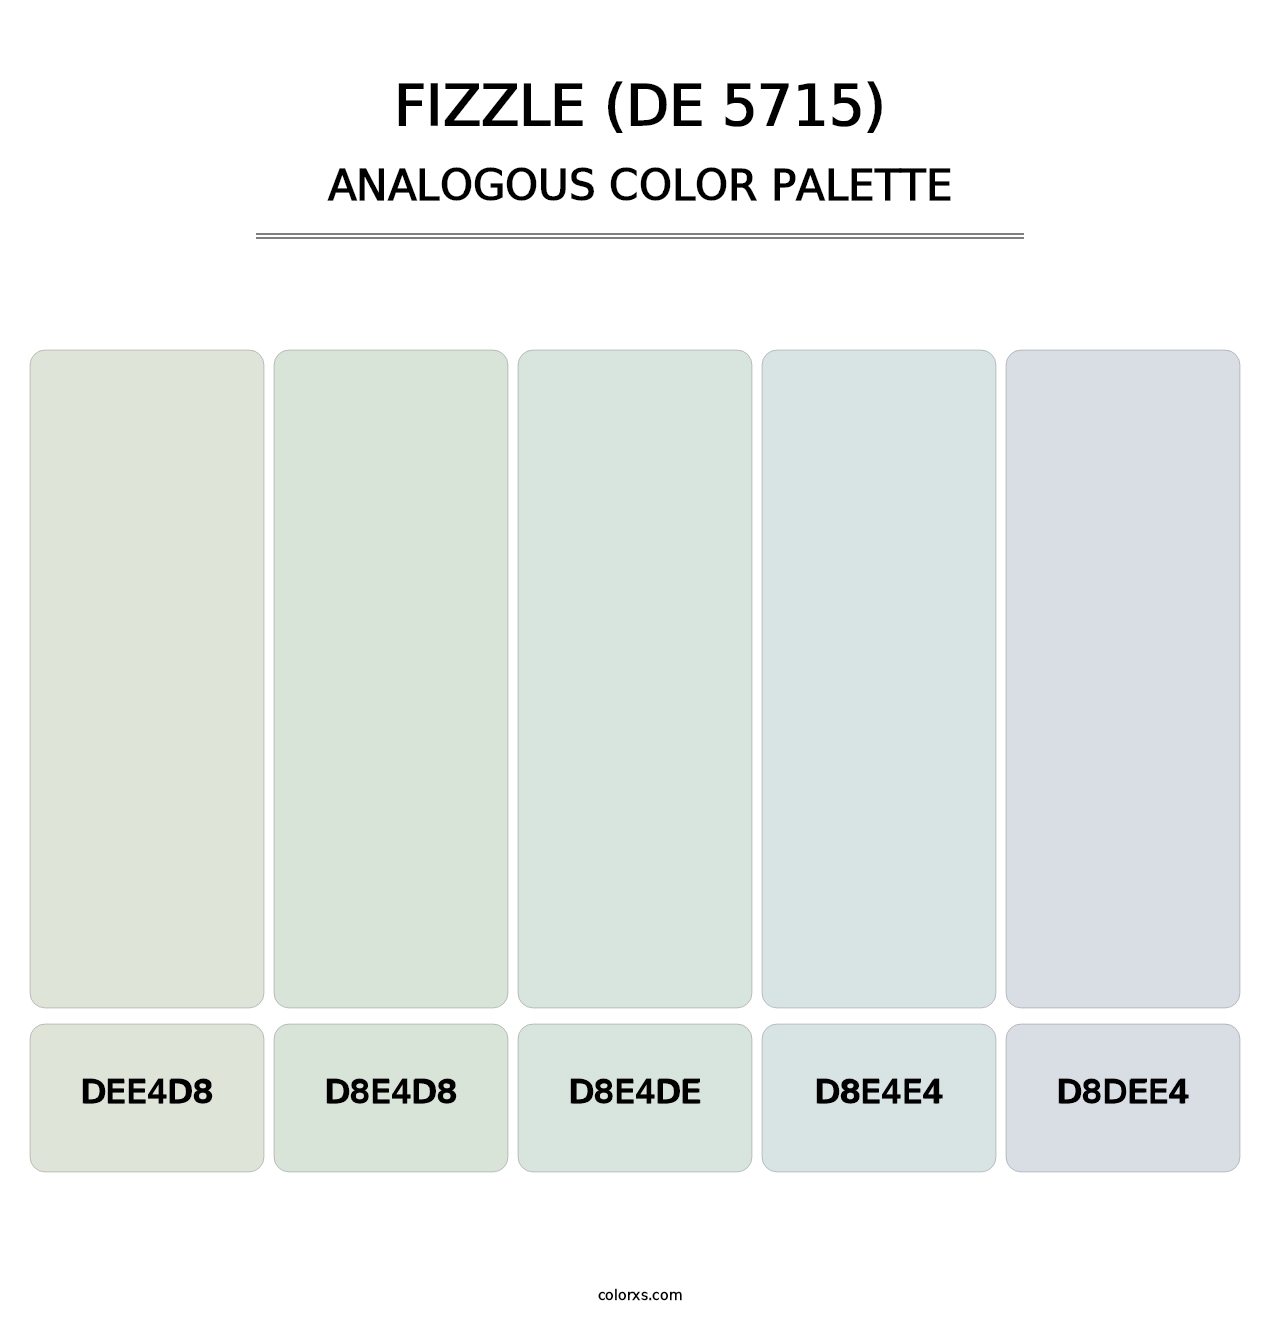 Fizzle (DE 5715) - Analogous Color Palette